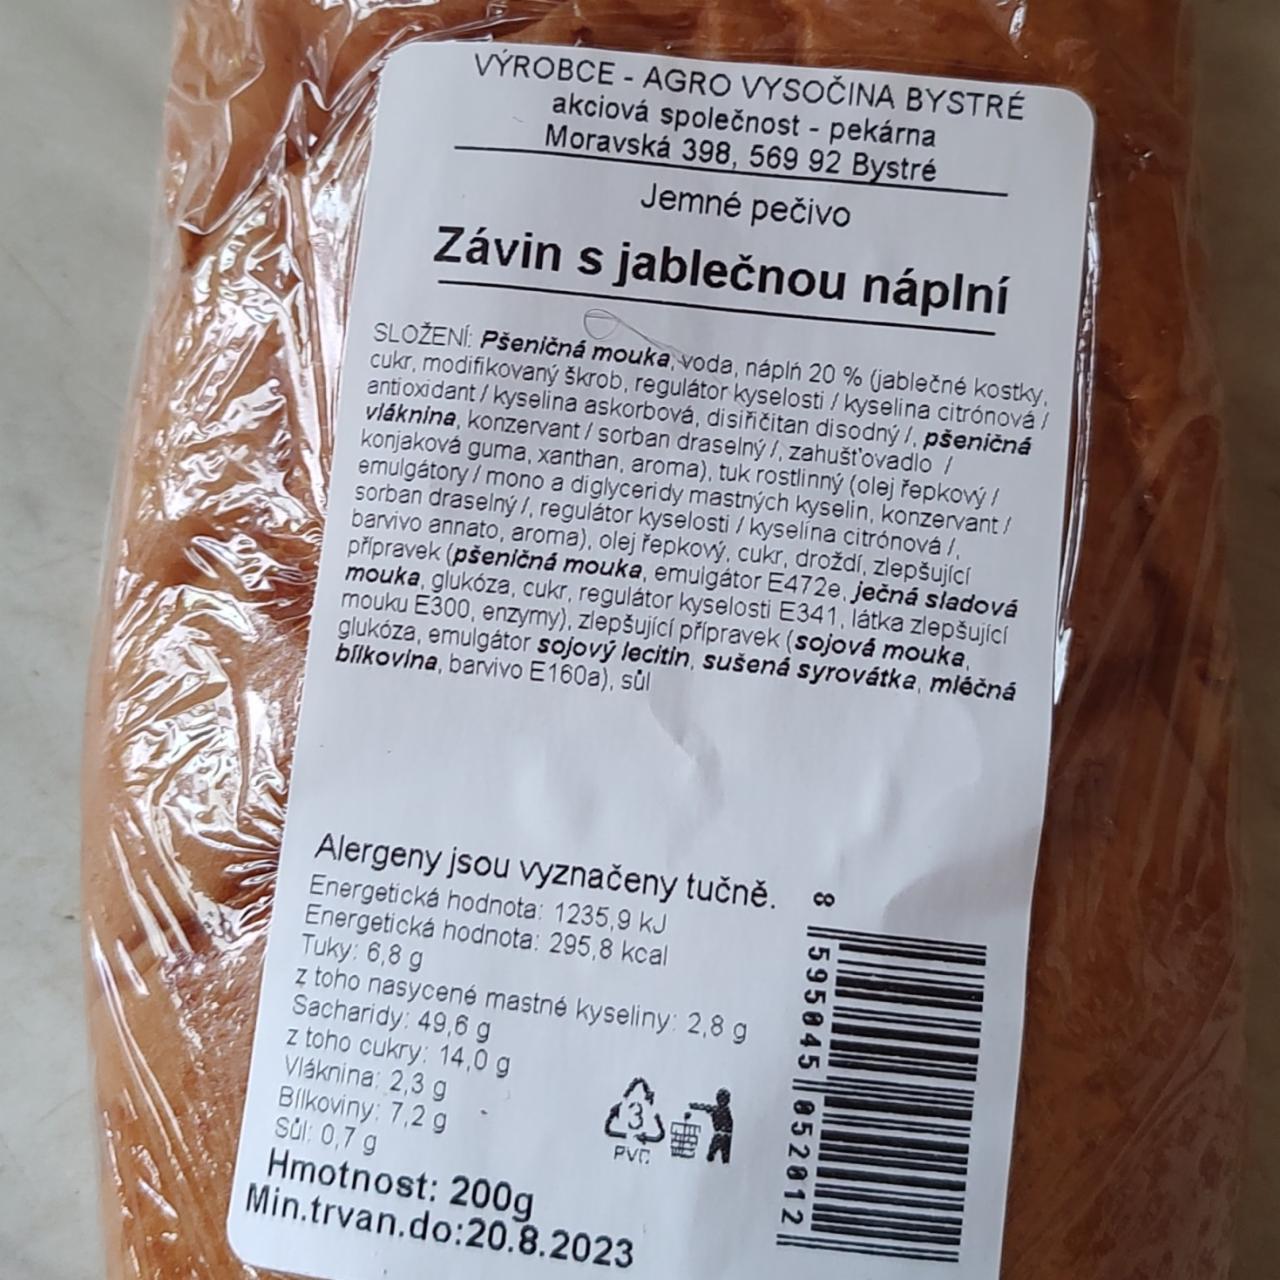 Fotografie - Závin s jablečnou náplní Agro Vysočina Bystré